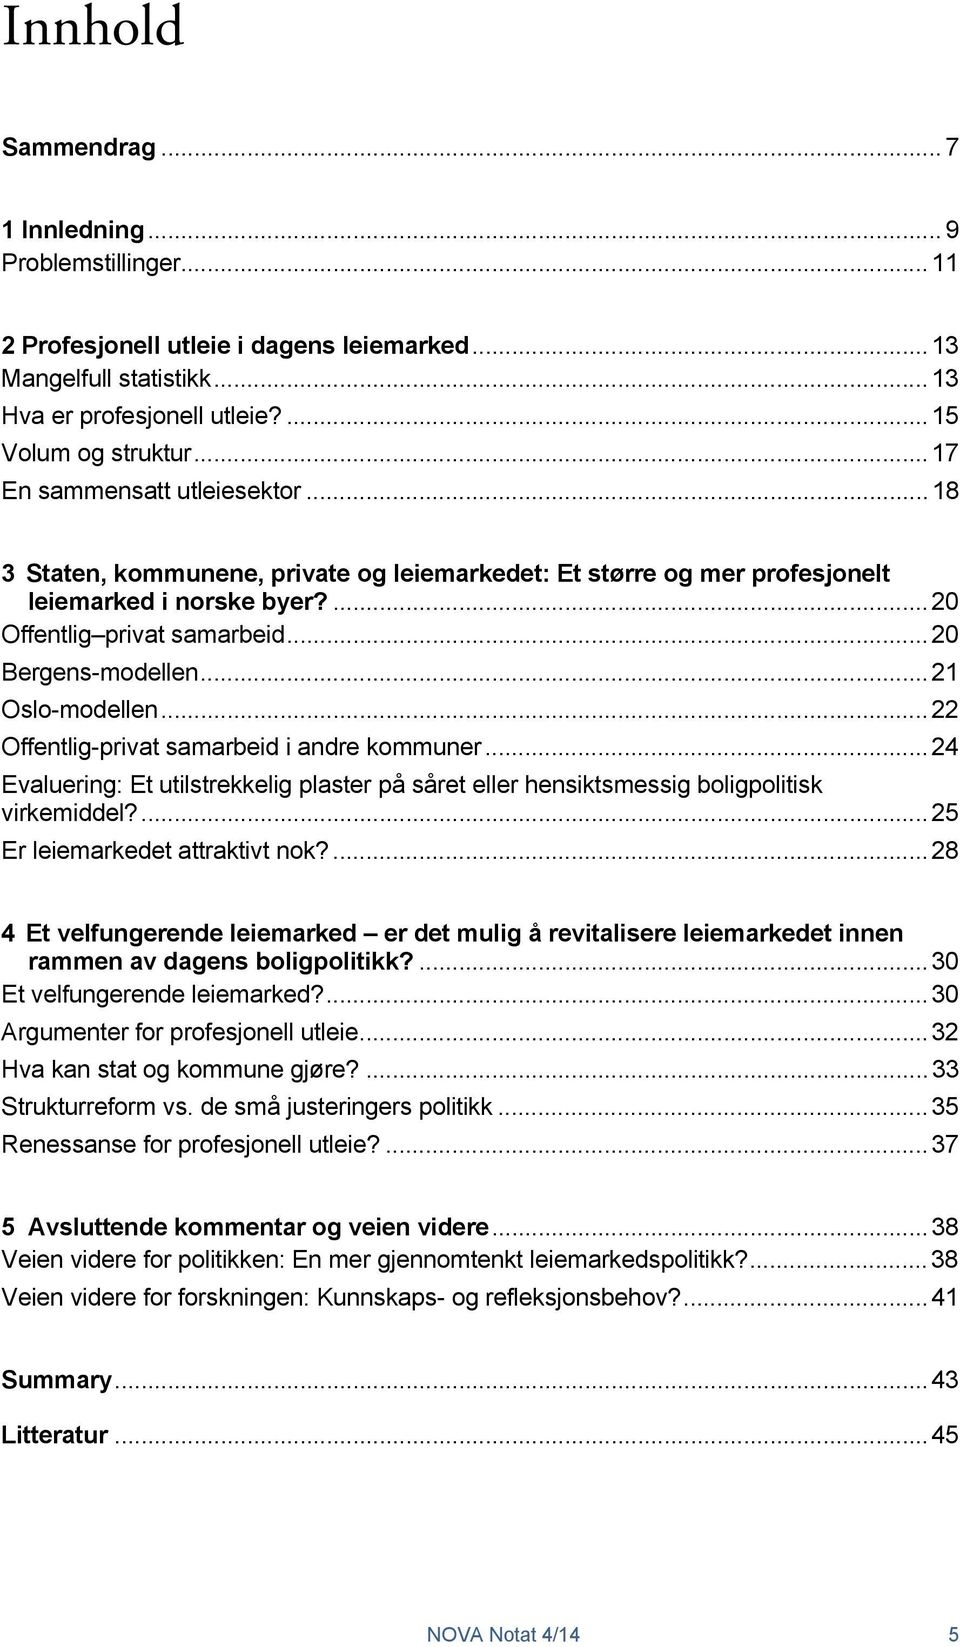 .. 21 Oslo-modellen... 22 Offentlig-privat samarbeid i andre kommuner... 24 Evaluering: Et utilstrekkelig plaster på såret eller hensiktsmessig boligpolitisk virkemiddel?